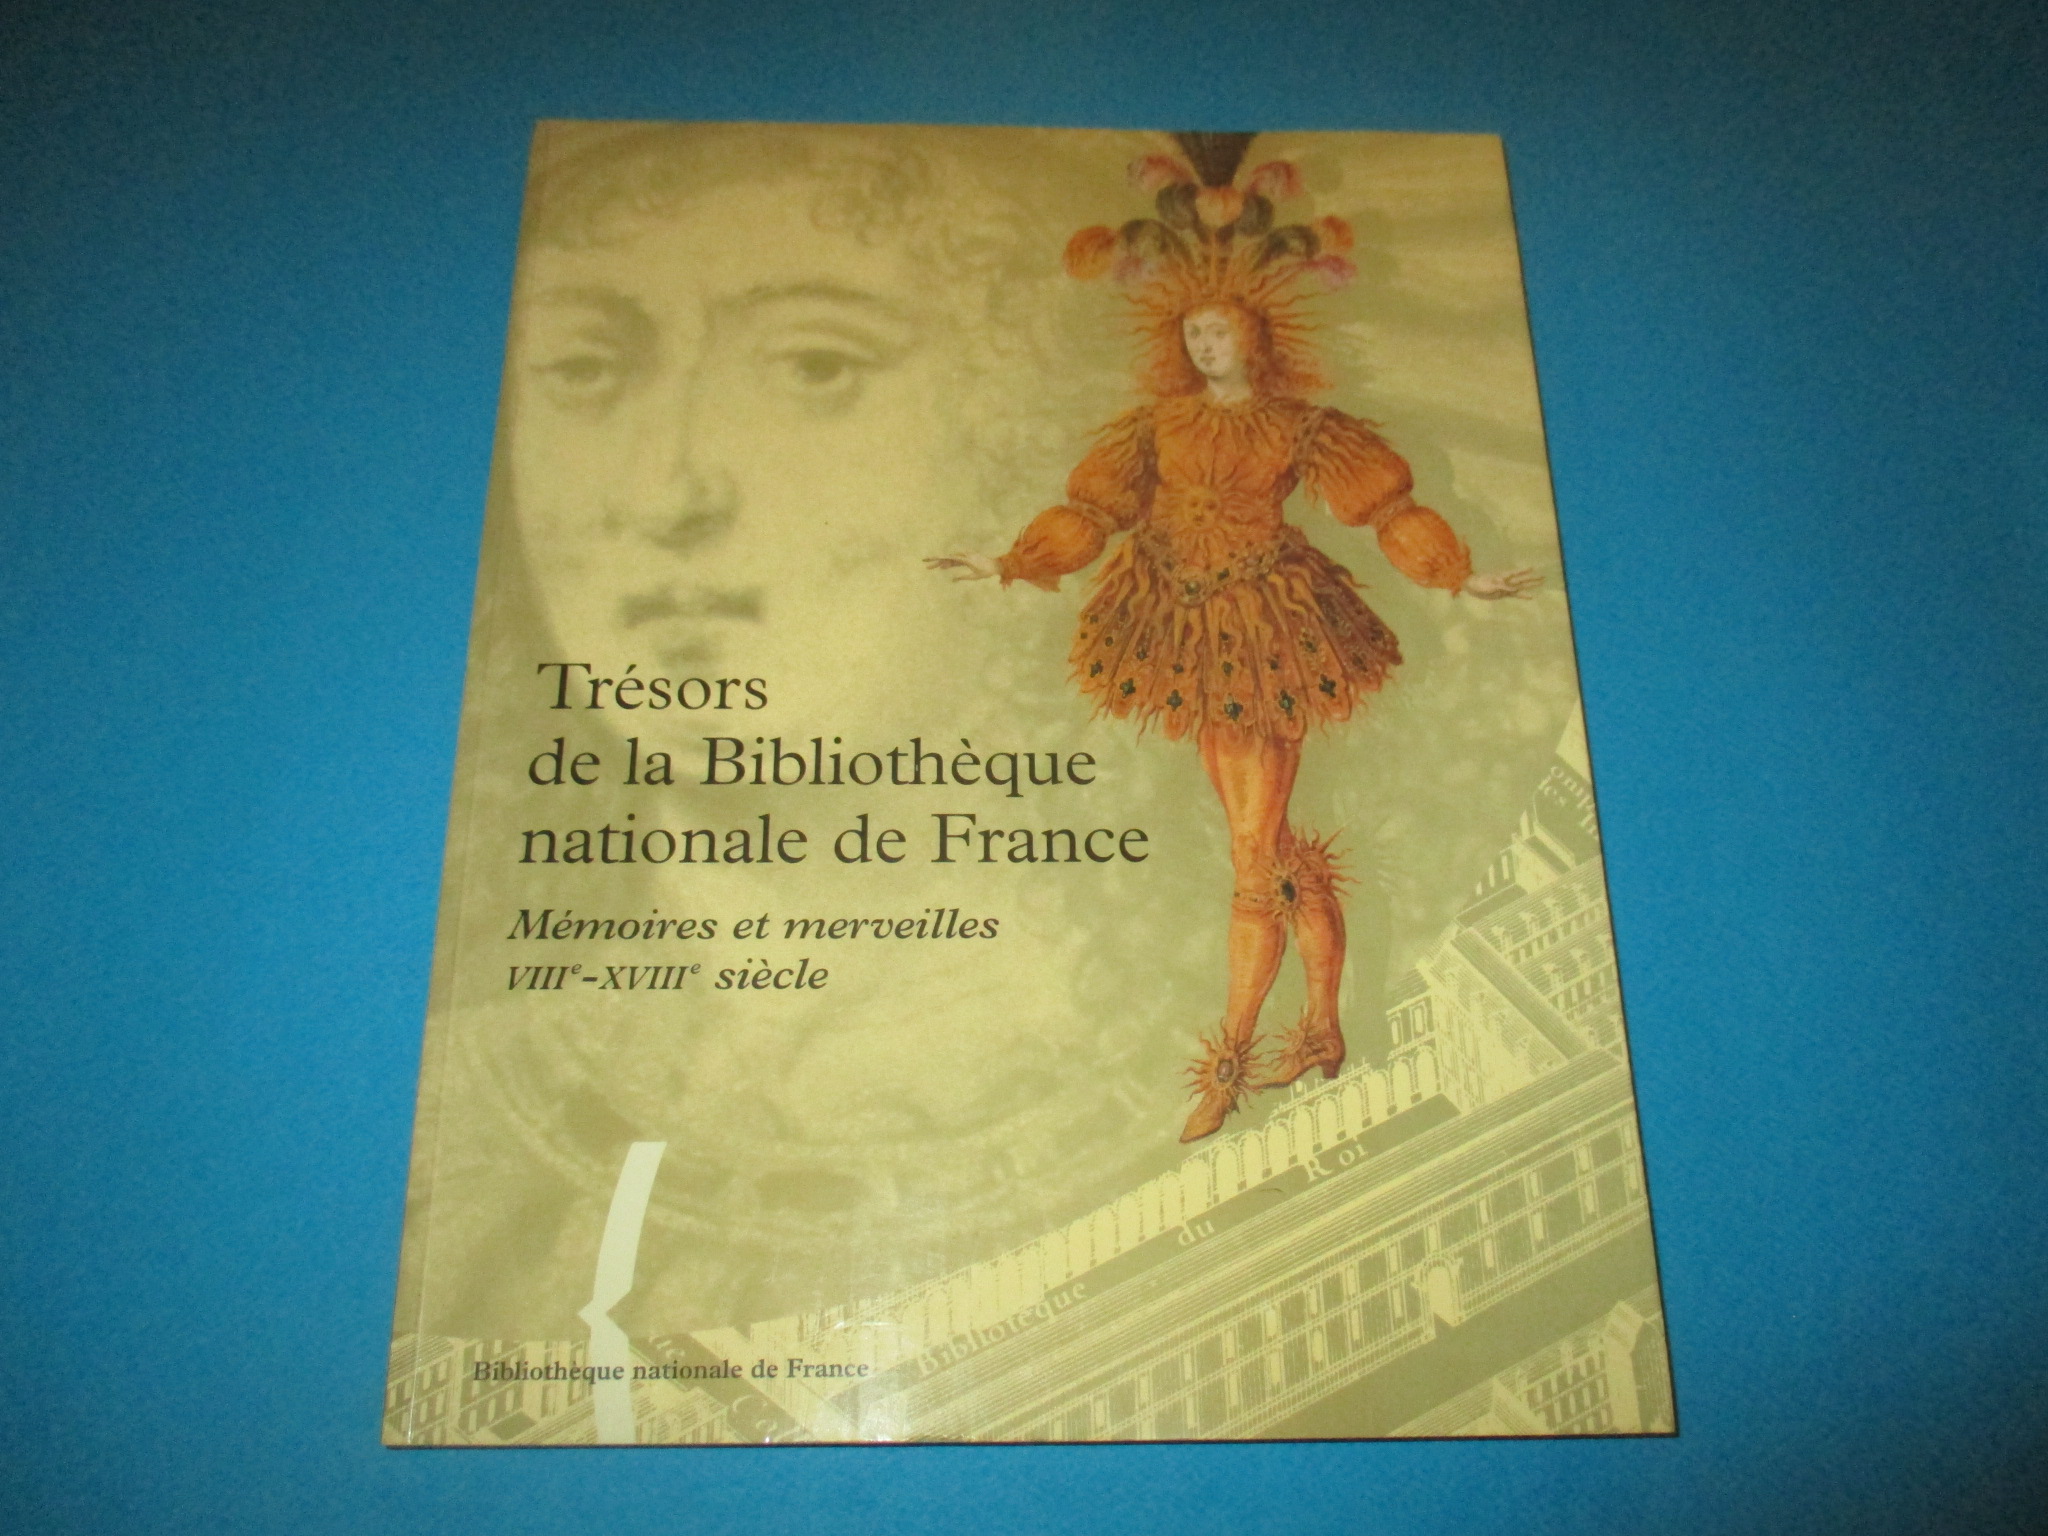 Trésors de la Bibliothèque nationale de France, Volume 1, Mémoires et merveilles VIIIe-XVIIIe siècle, BNF